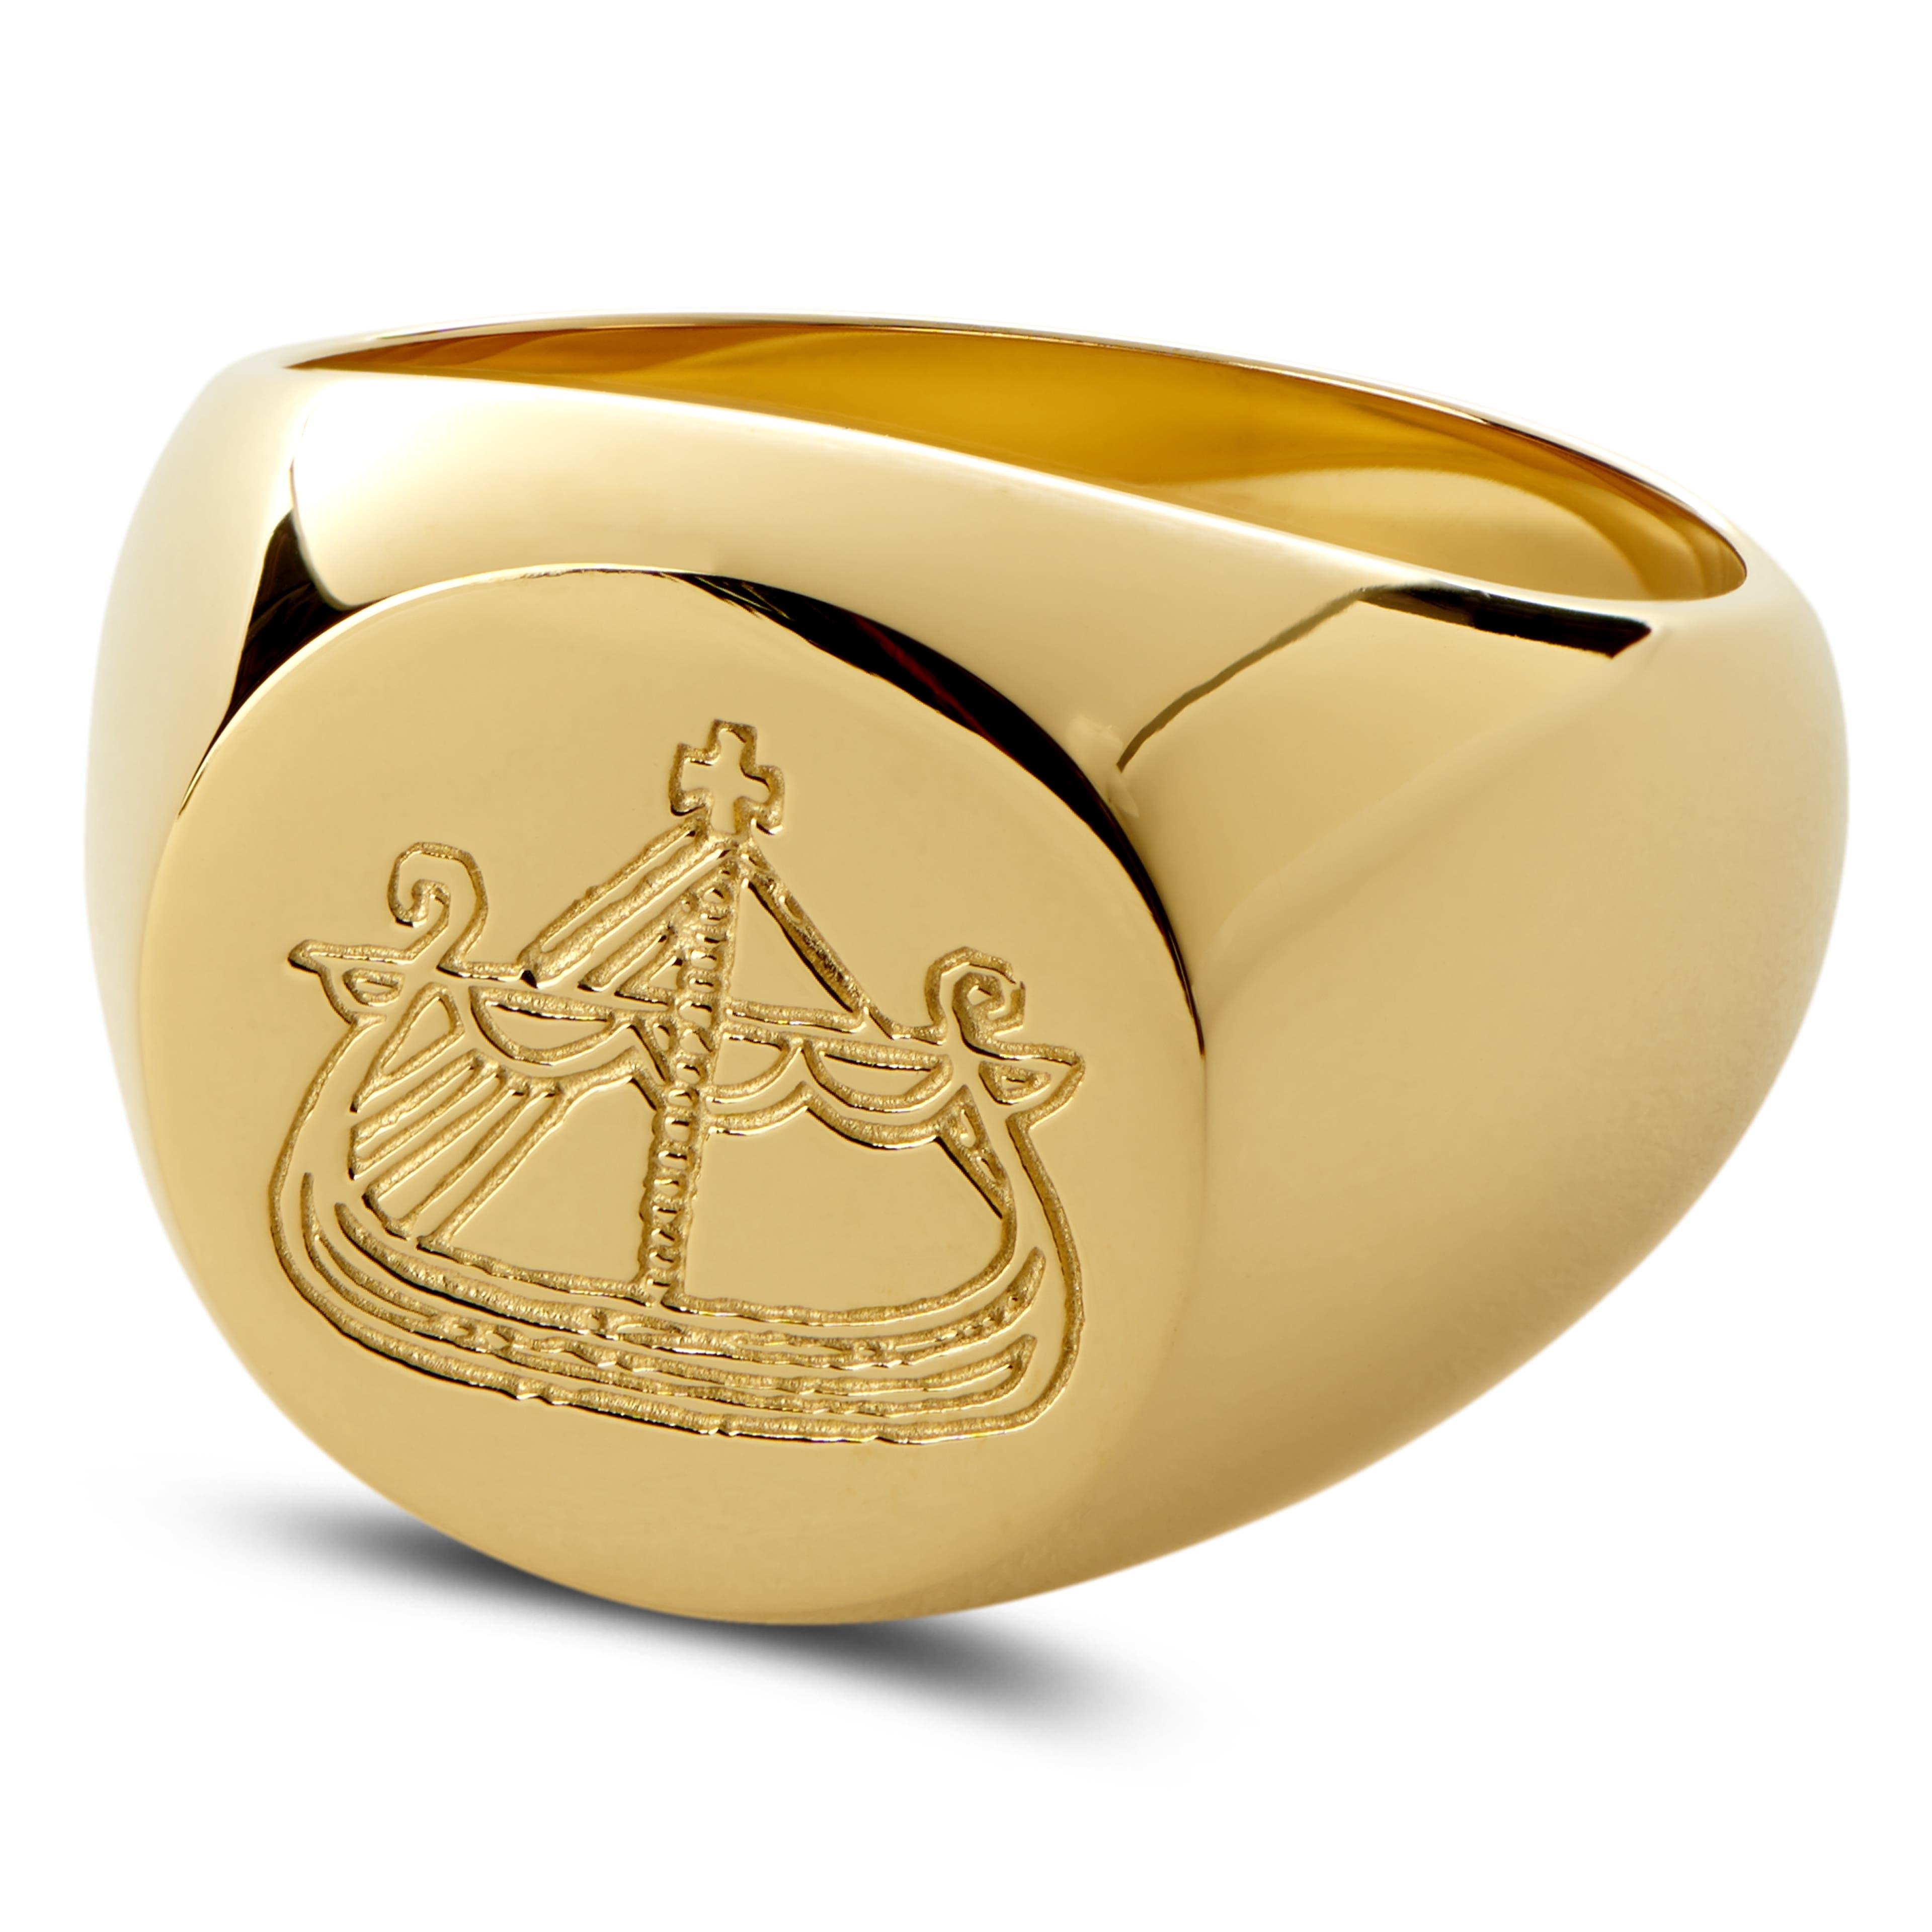 Lorne aranyszínű pecsétgyűrű